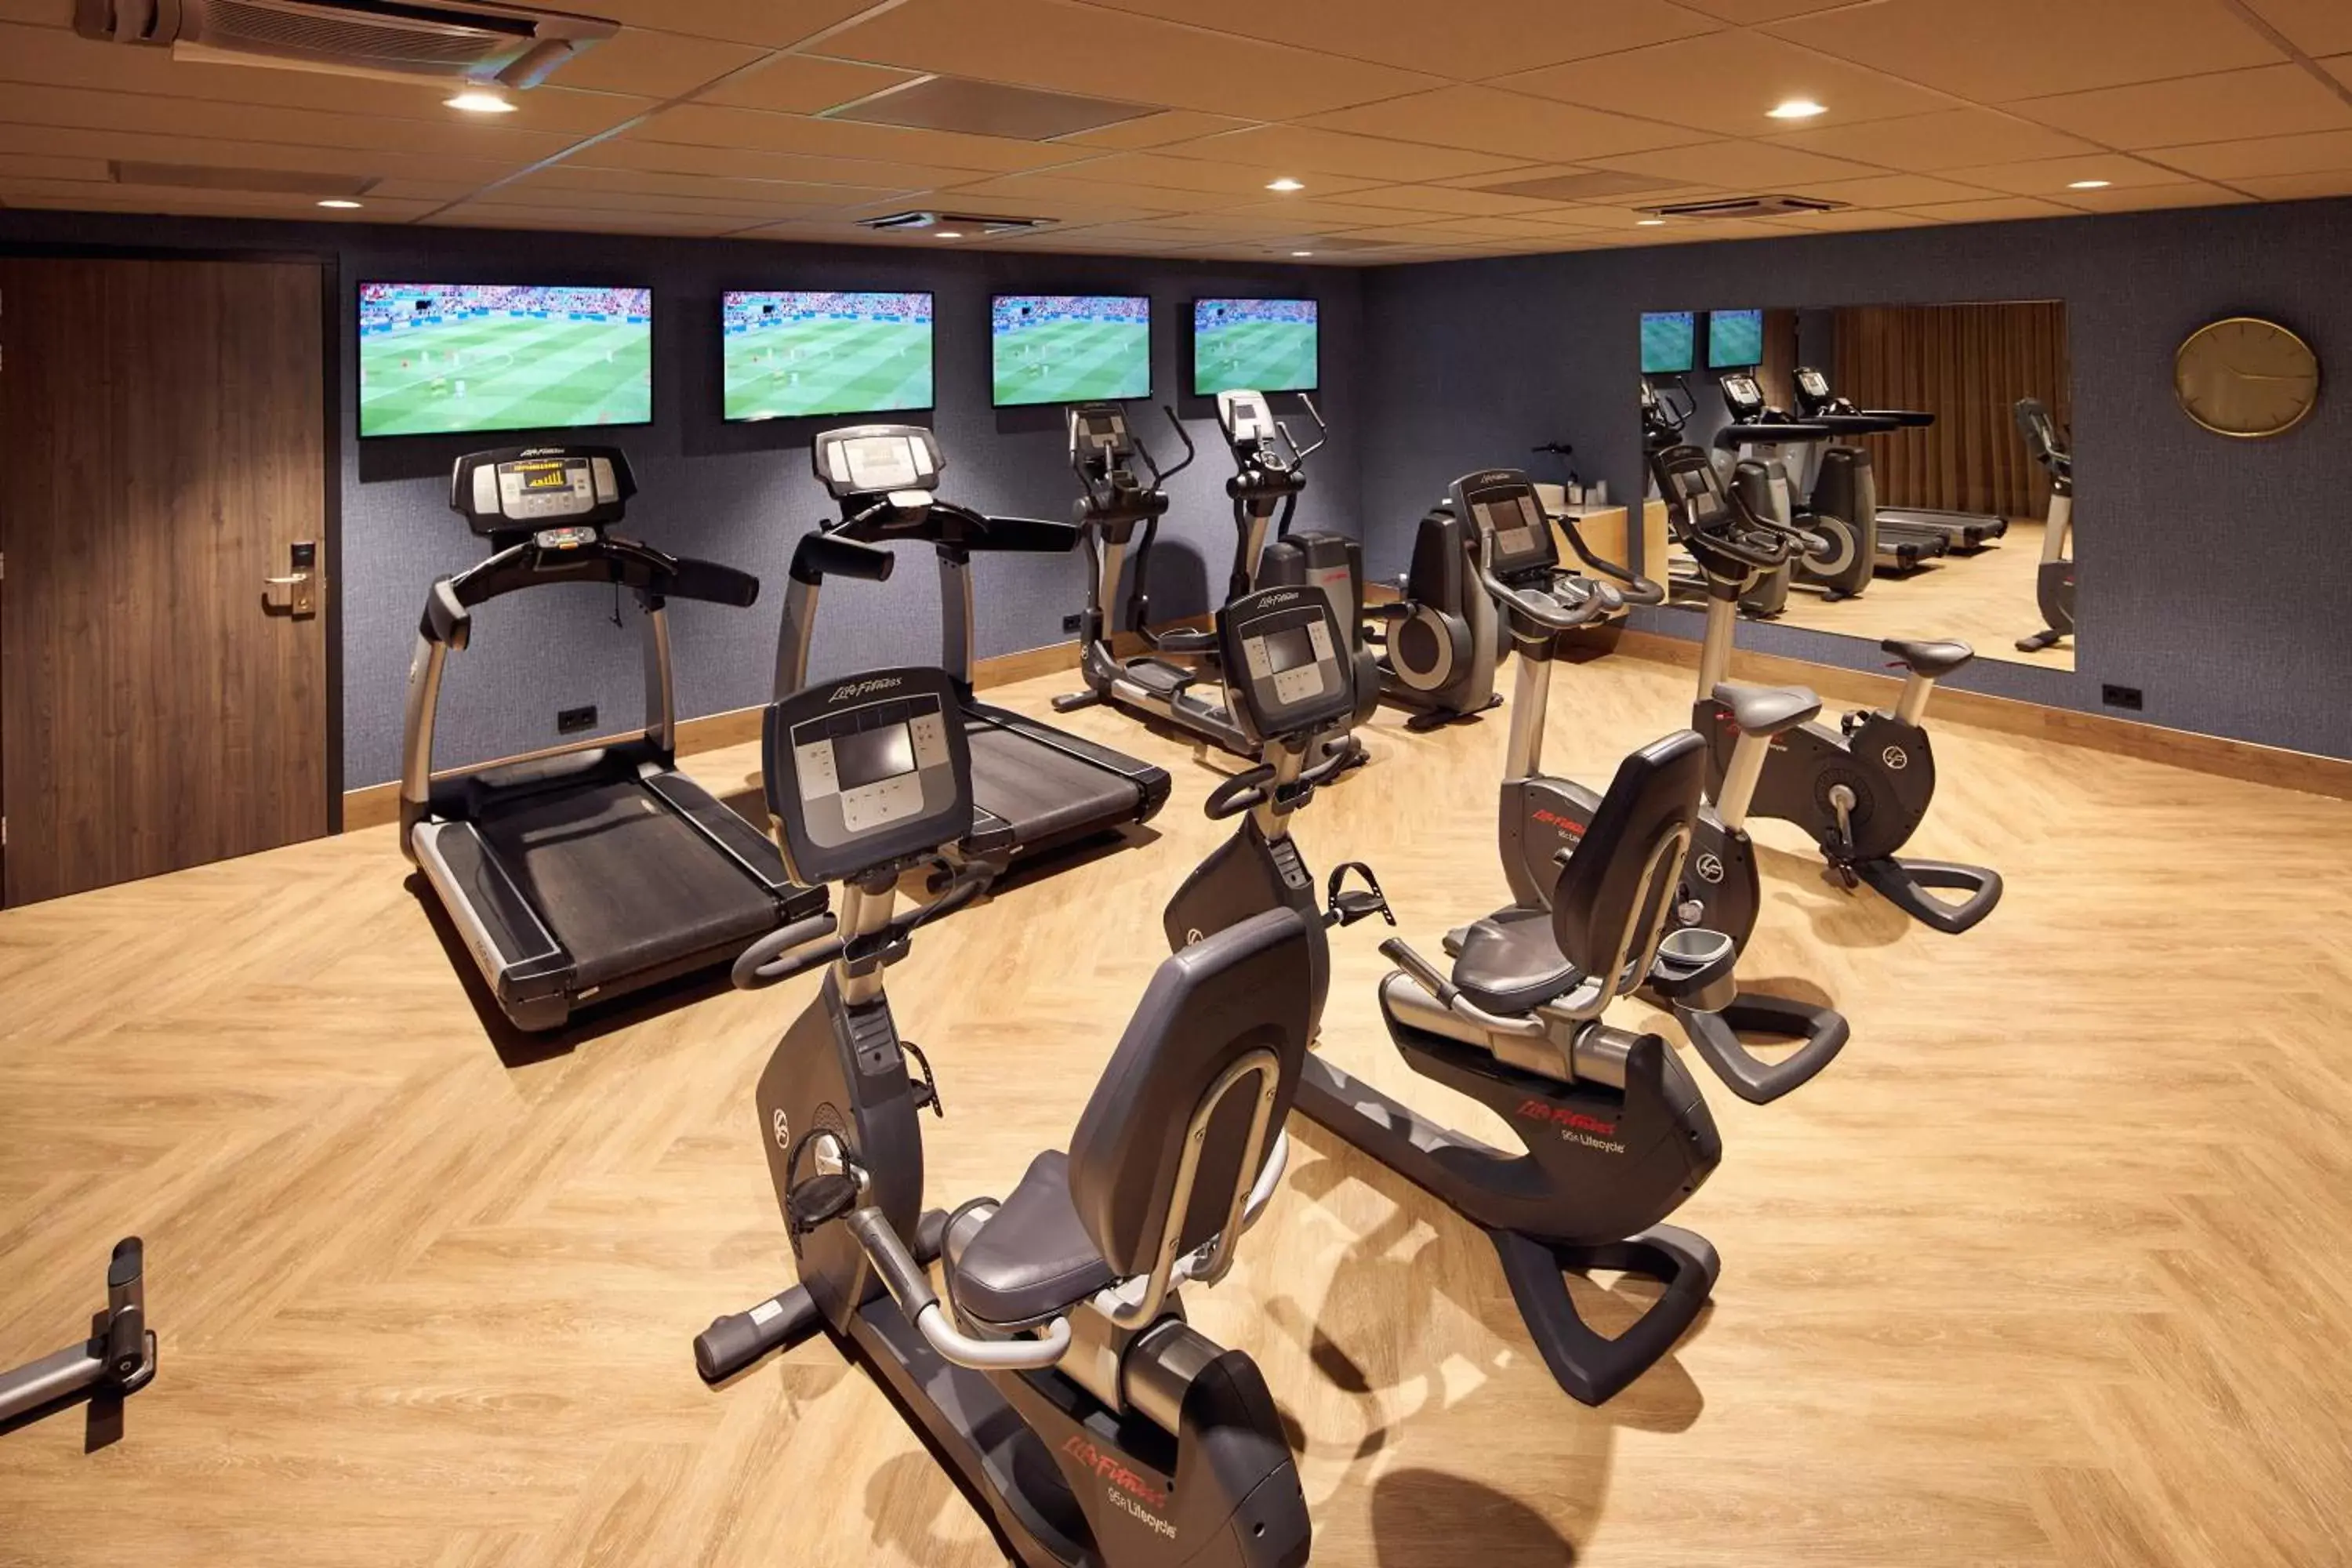 Fitness centre/facilities, Fitness Center/Facilities in Van der Valk Hotel Haarlem